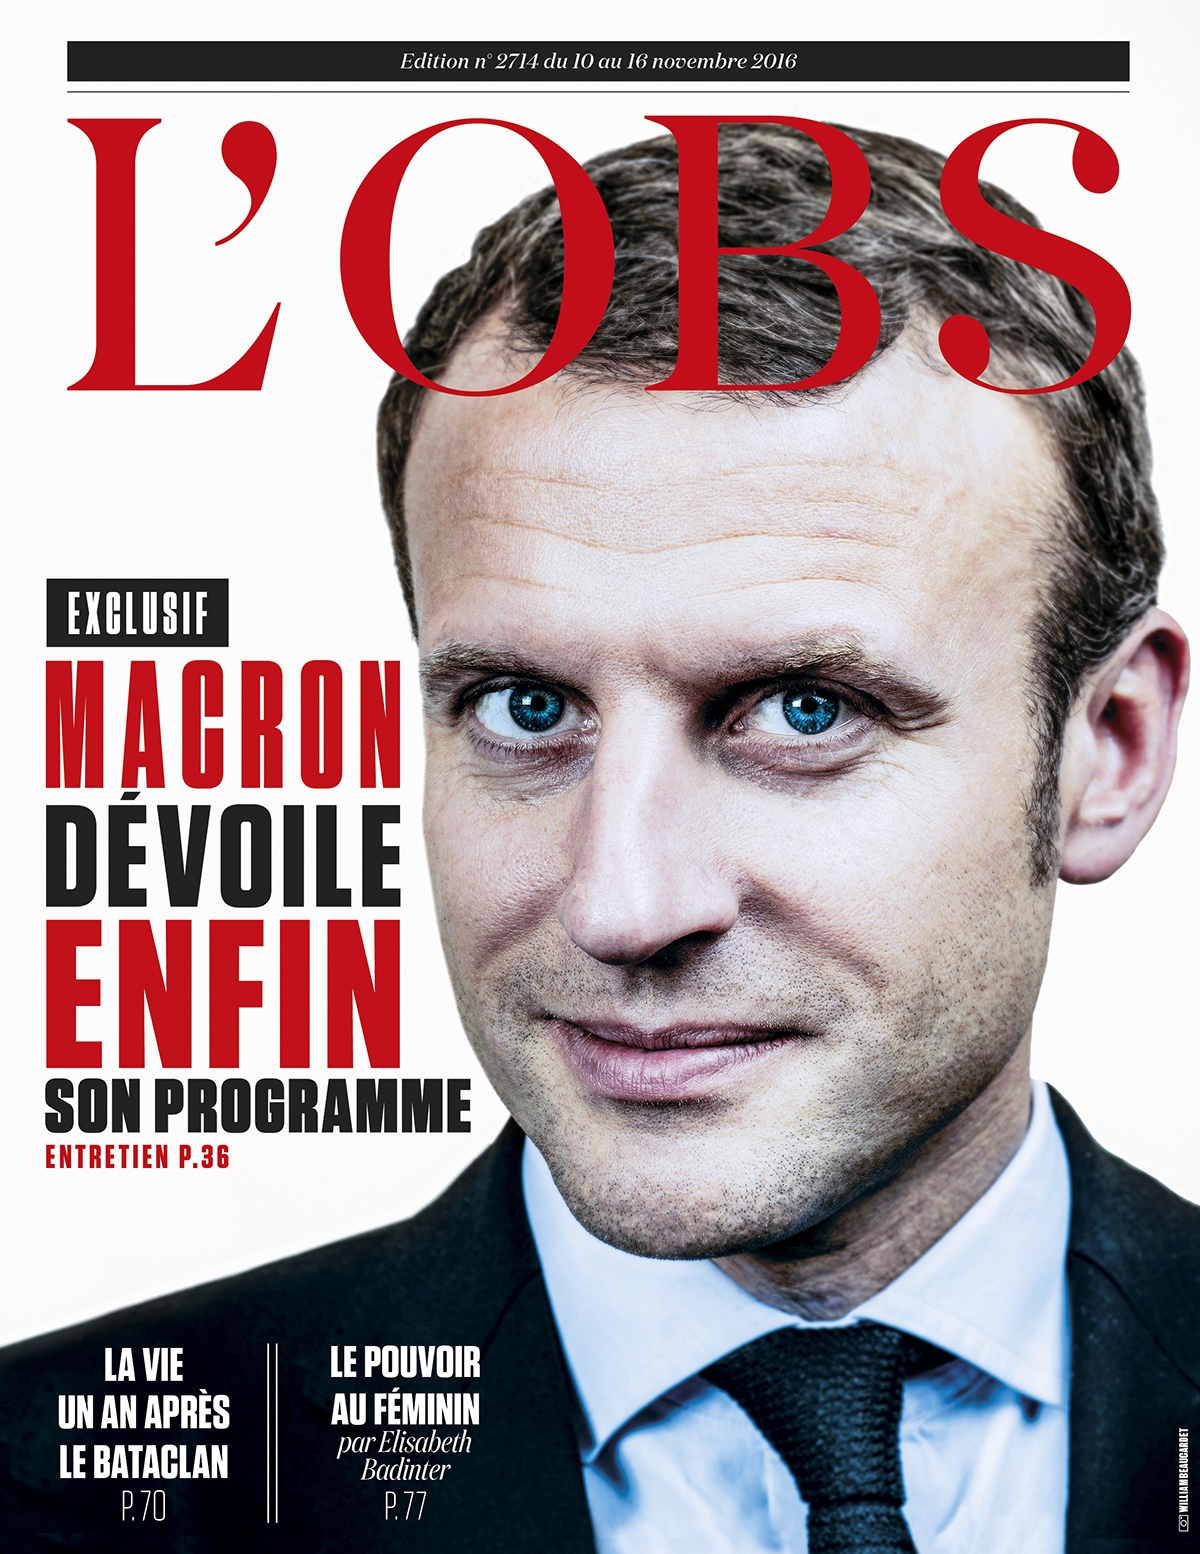 Emmanuel Macron, candidat du système : un contre-portrait